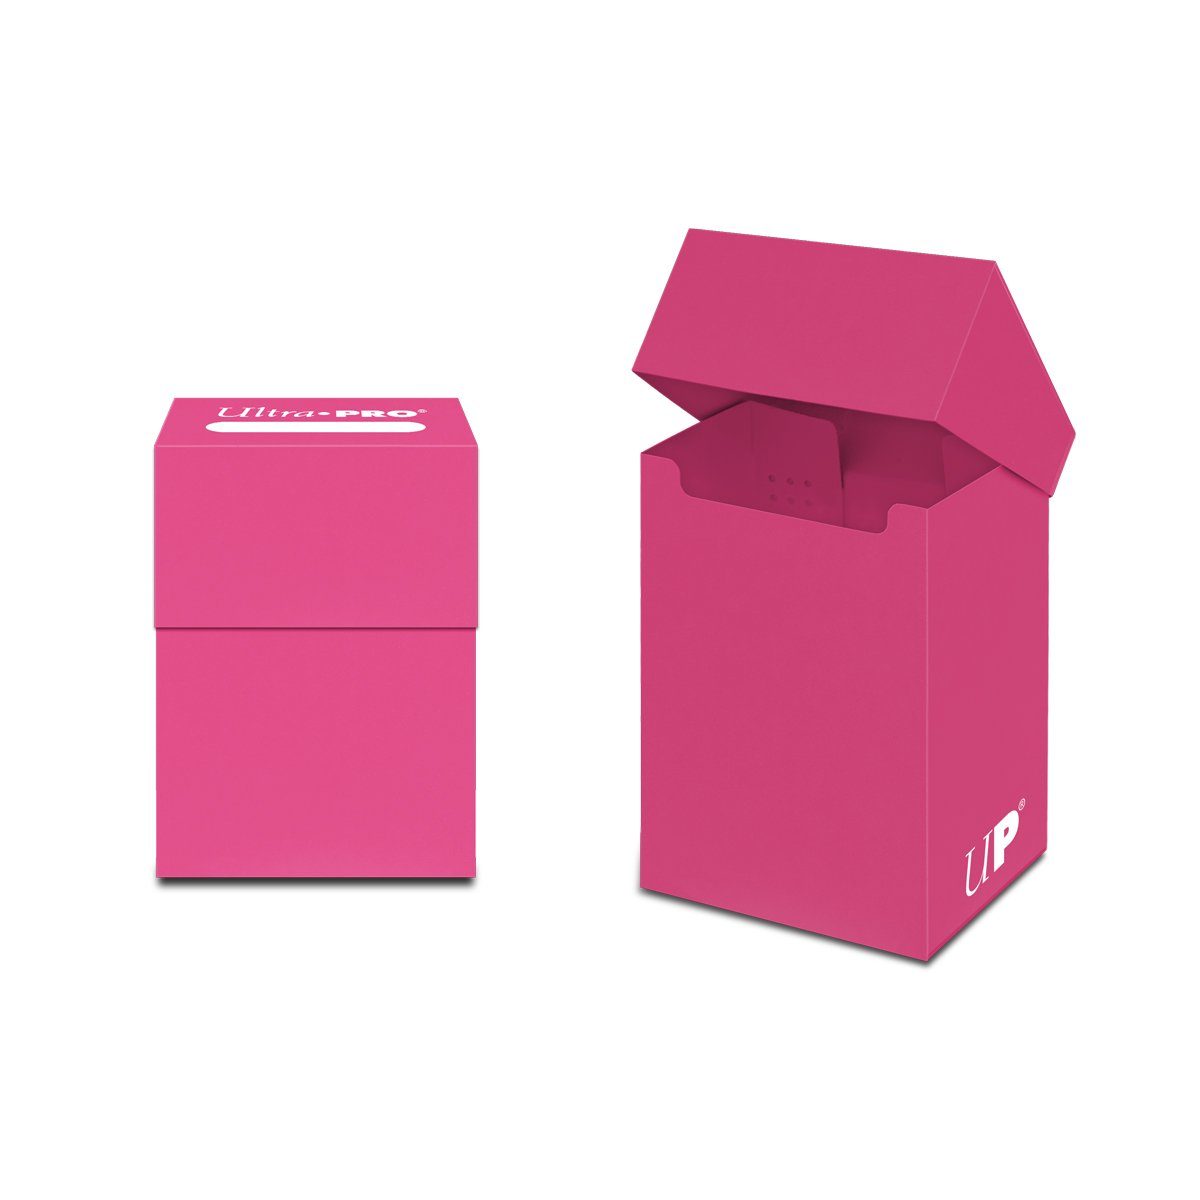 Ultra Pro Sammelkarte Ultra Pro - Aufbewahrungsbox für Sammelkarten - pink